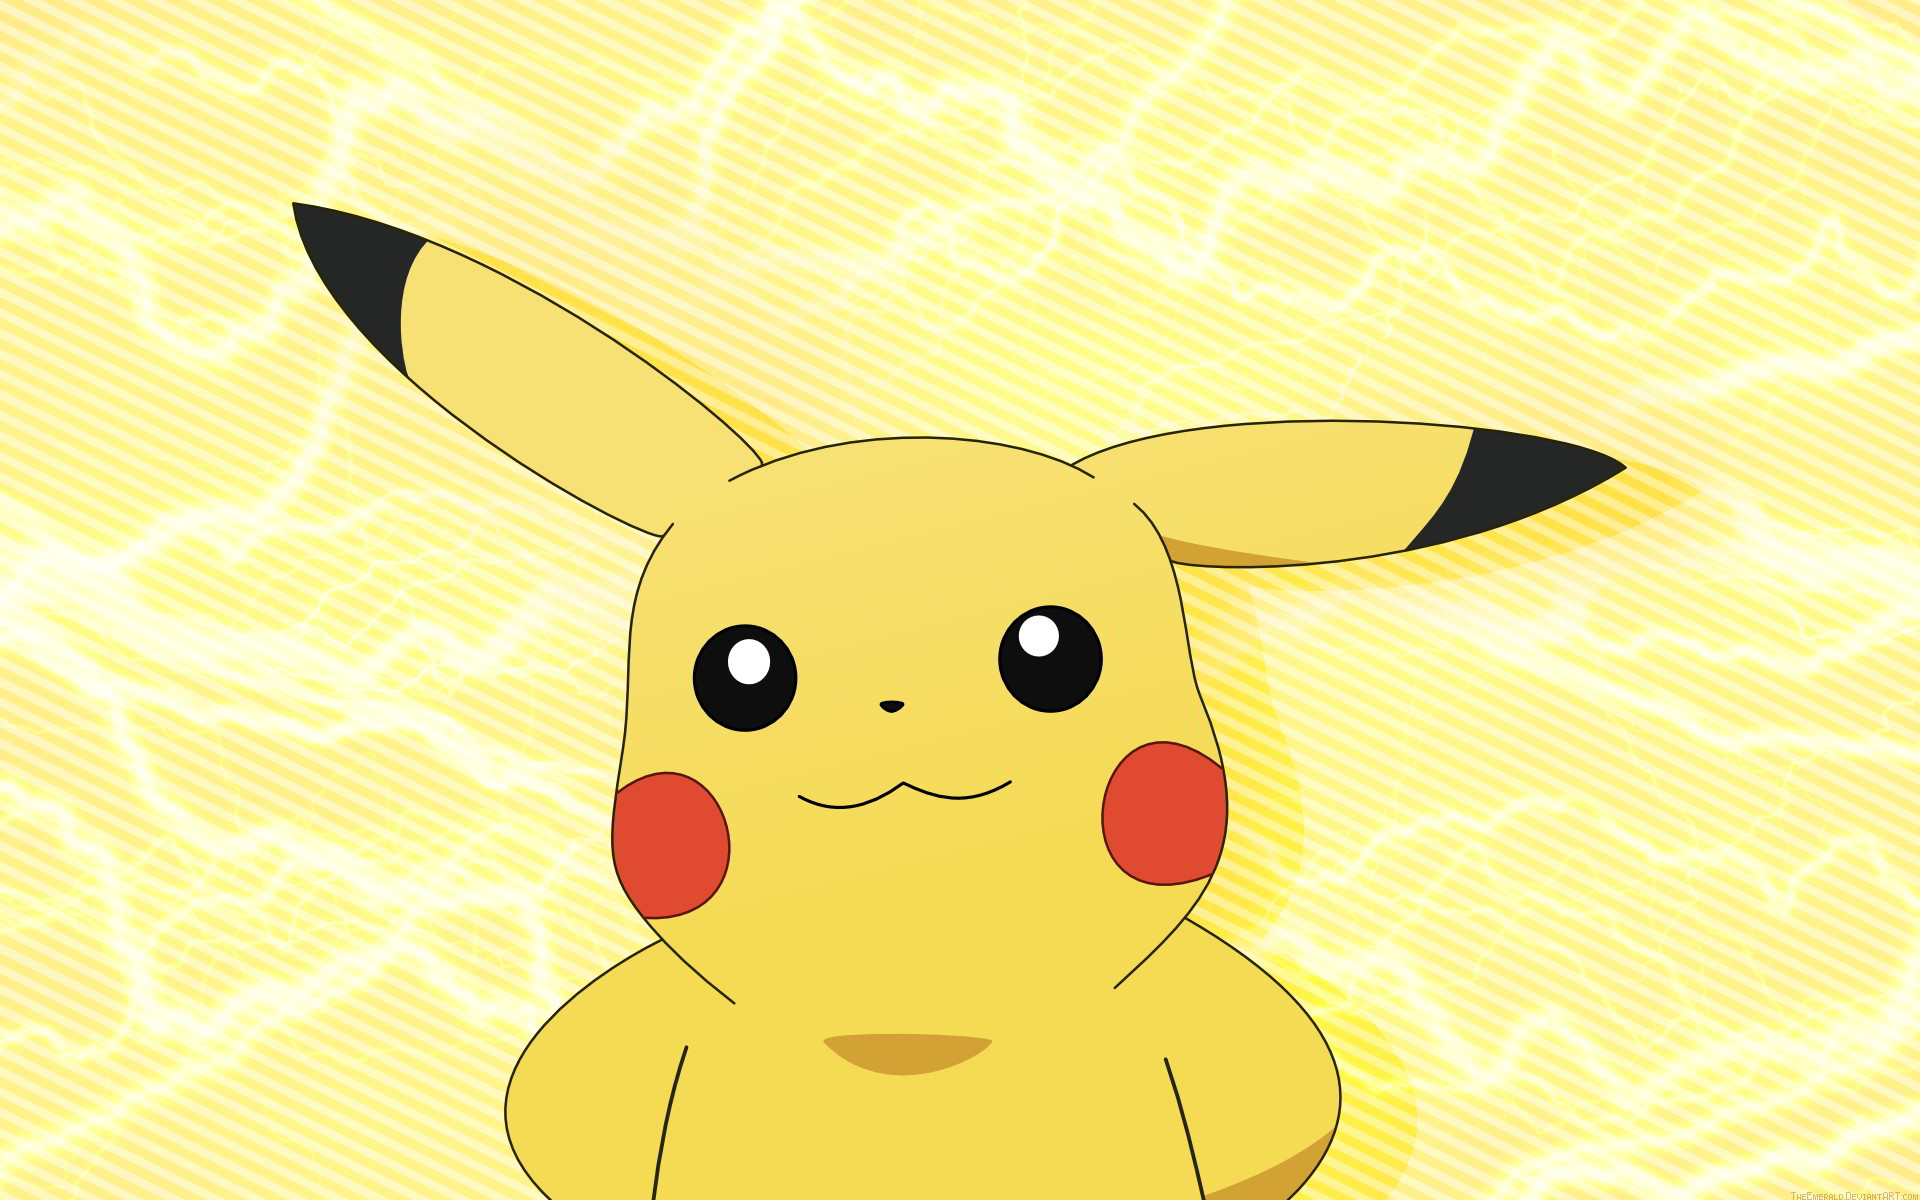 Pikachu  4264 Ảnh vector và hình chụp có sẵn  Shutterstock